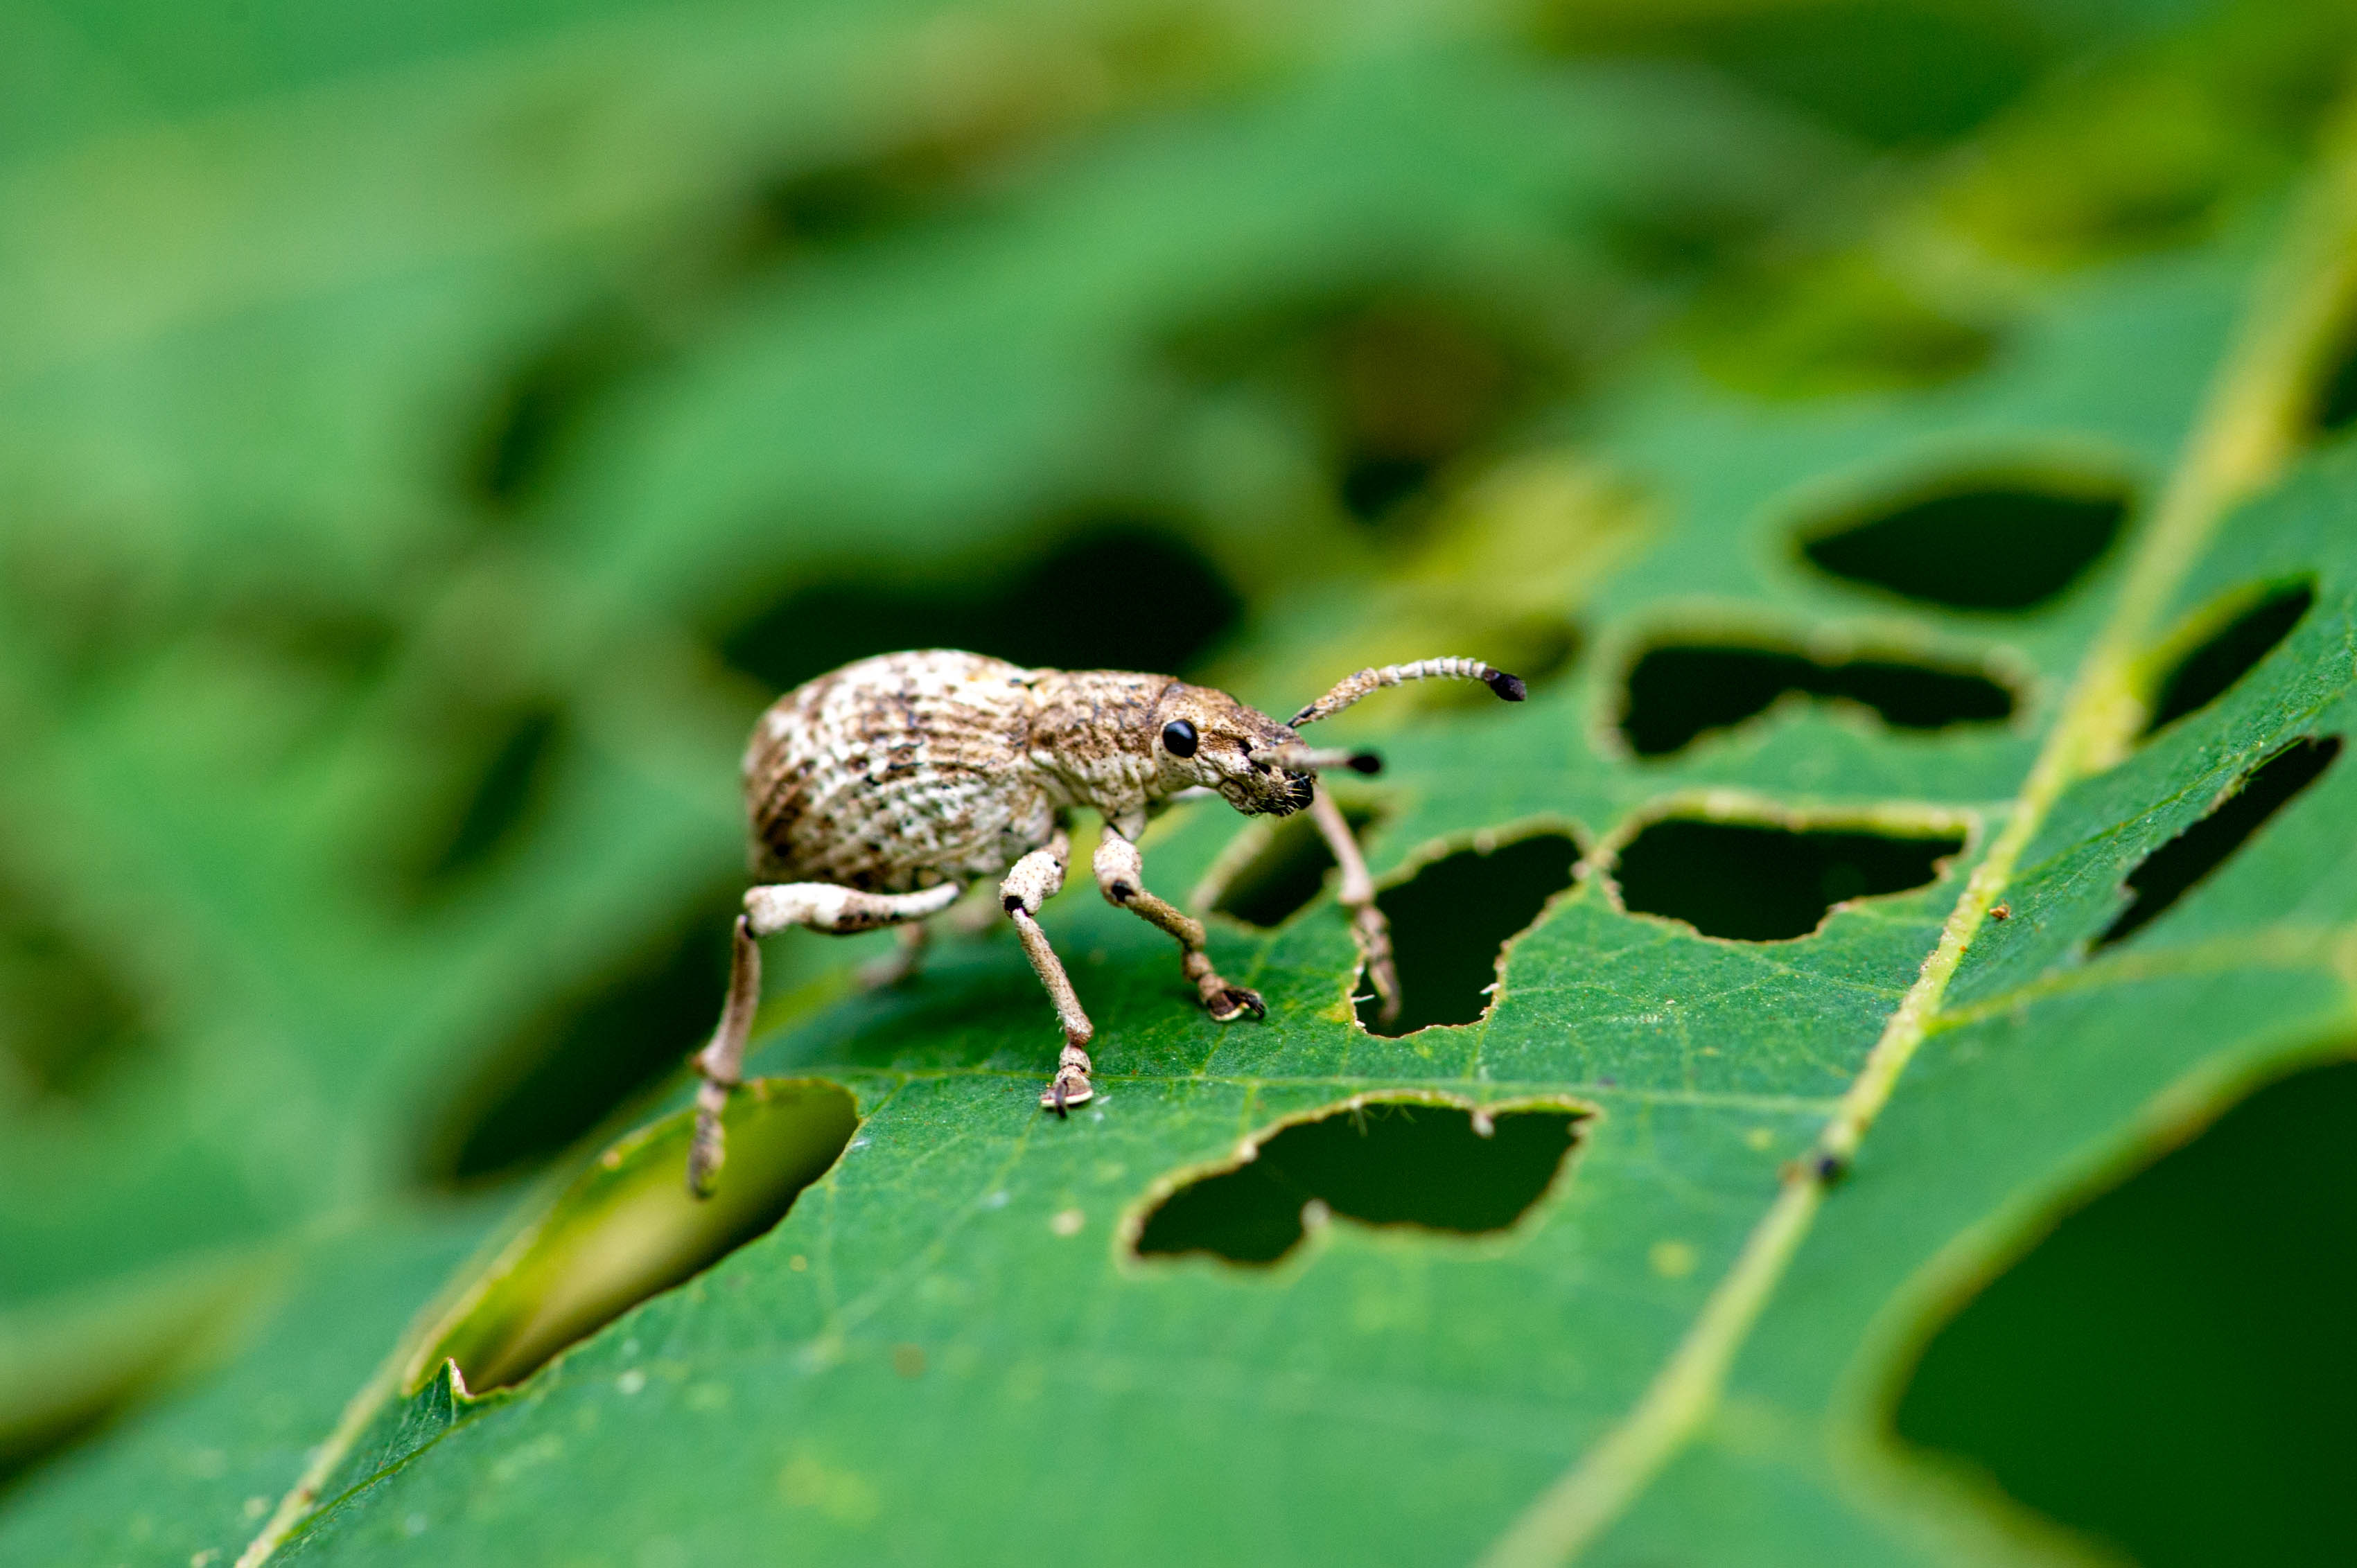 クロカタゾウムシ 世界で一番硬い虫 虫の写真と生態なら昆虫写真図鑑 ムシミル